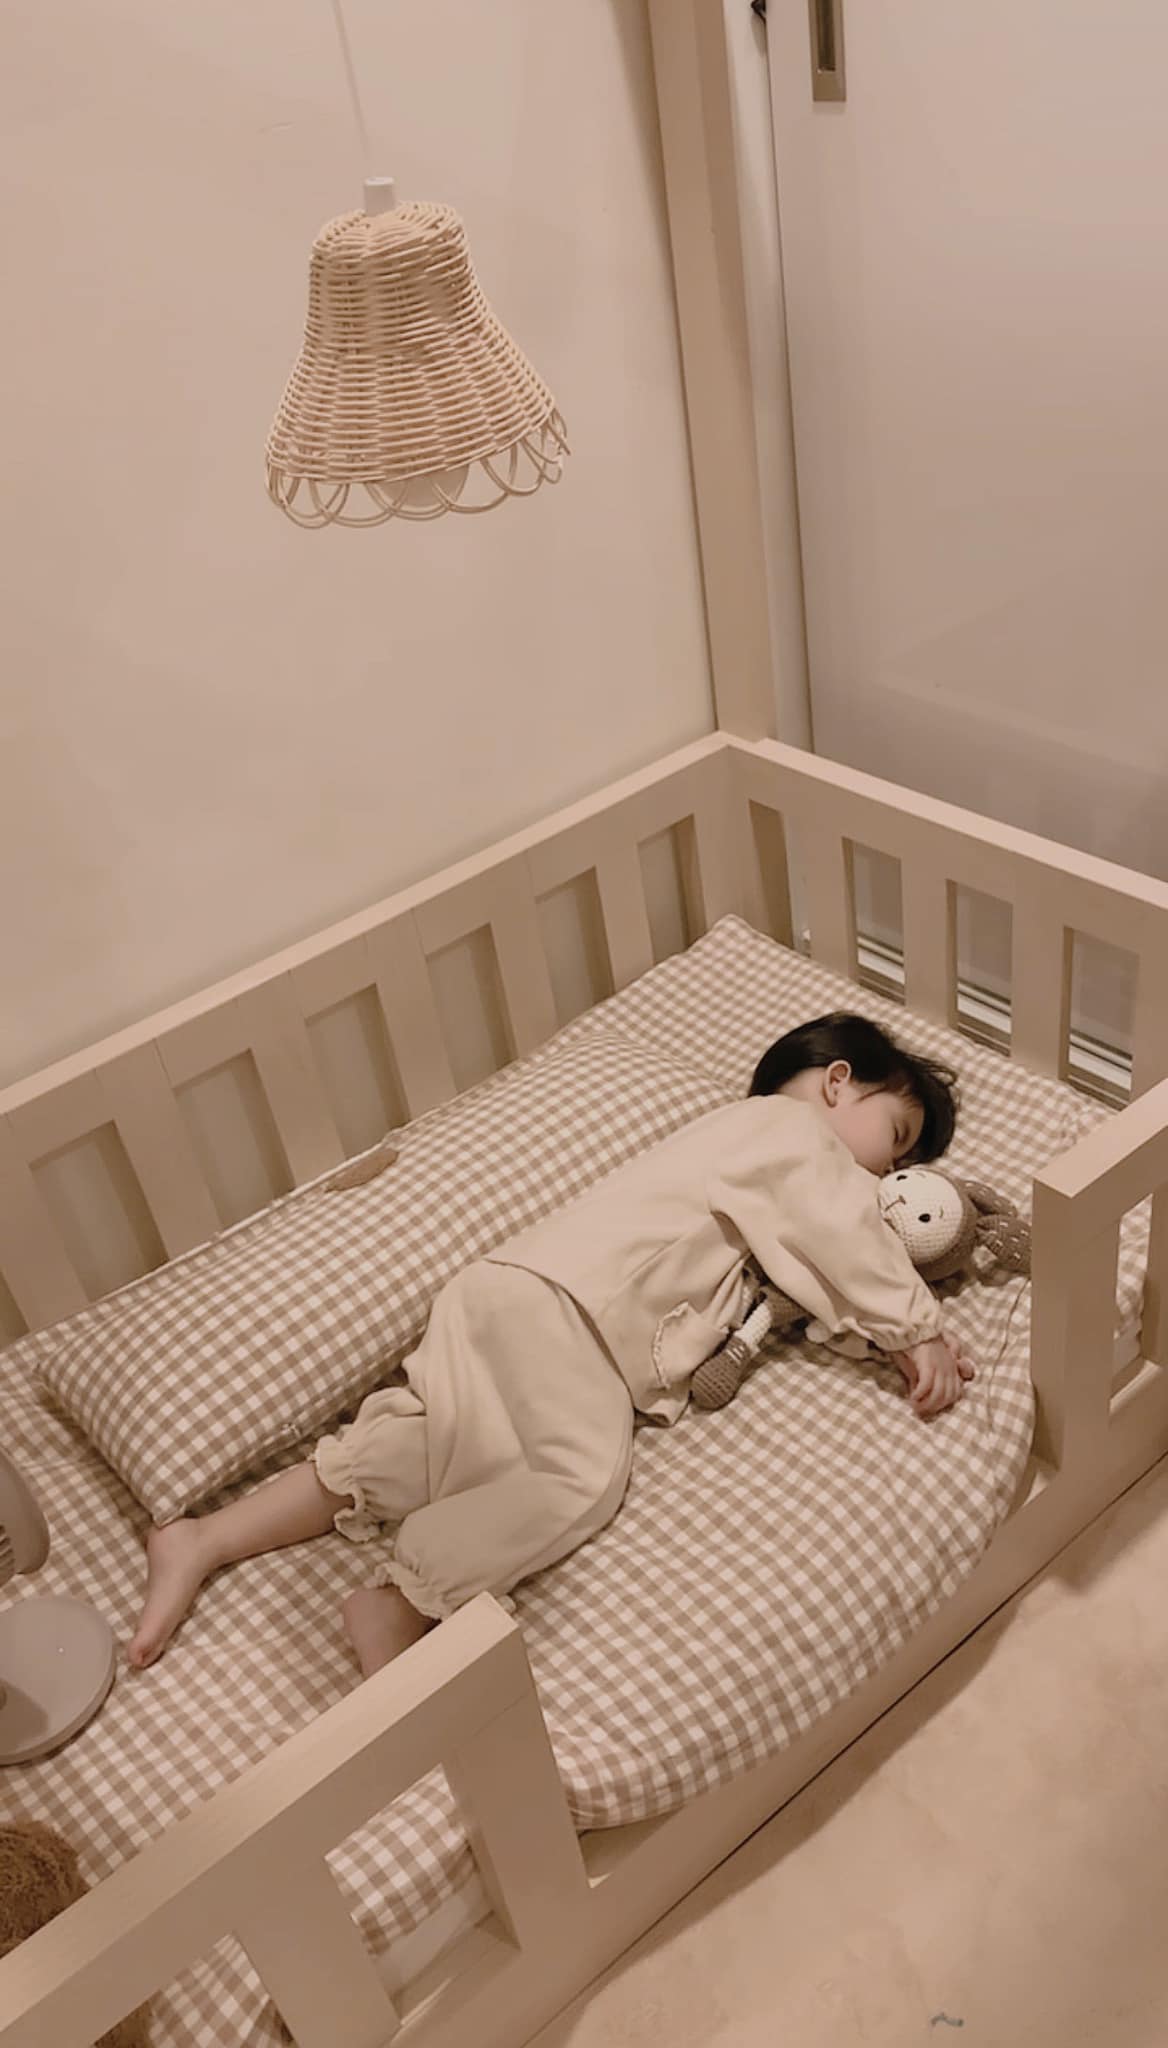 Nhiều bố mẹ phàn nàn con khó ngủ, không ngon giấc, lý do có thể từ 4 thói quen xấu mỗi đêm - Ảnh 1.